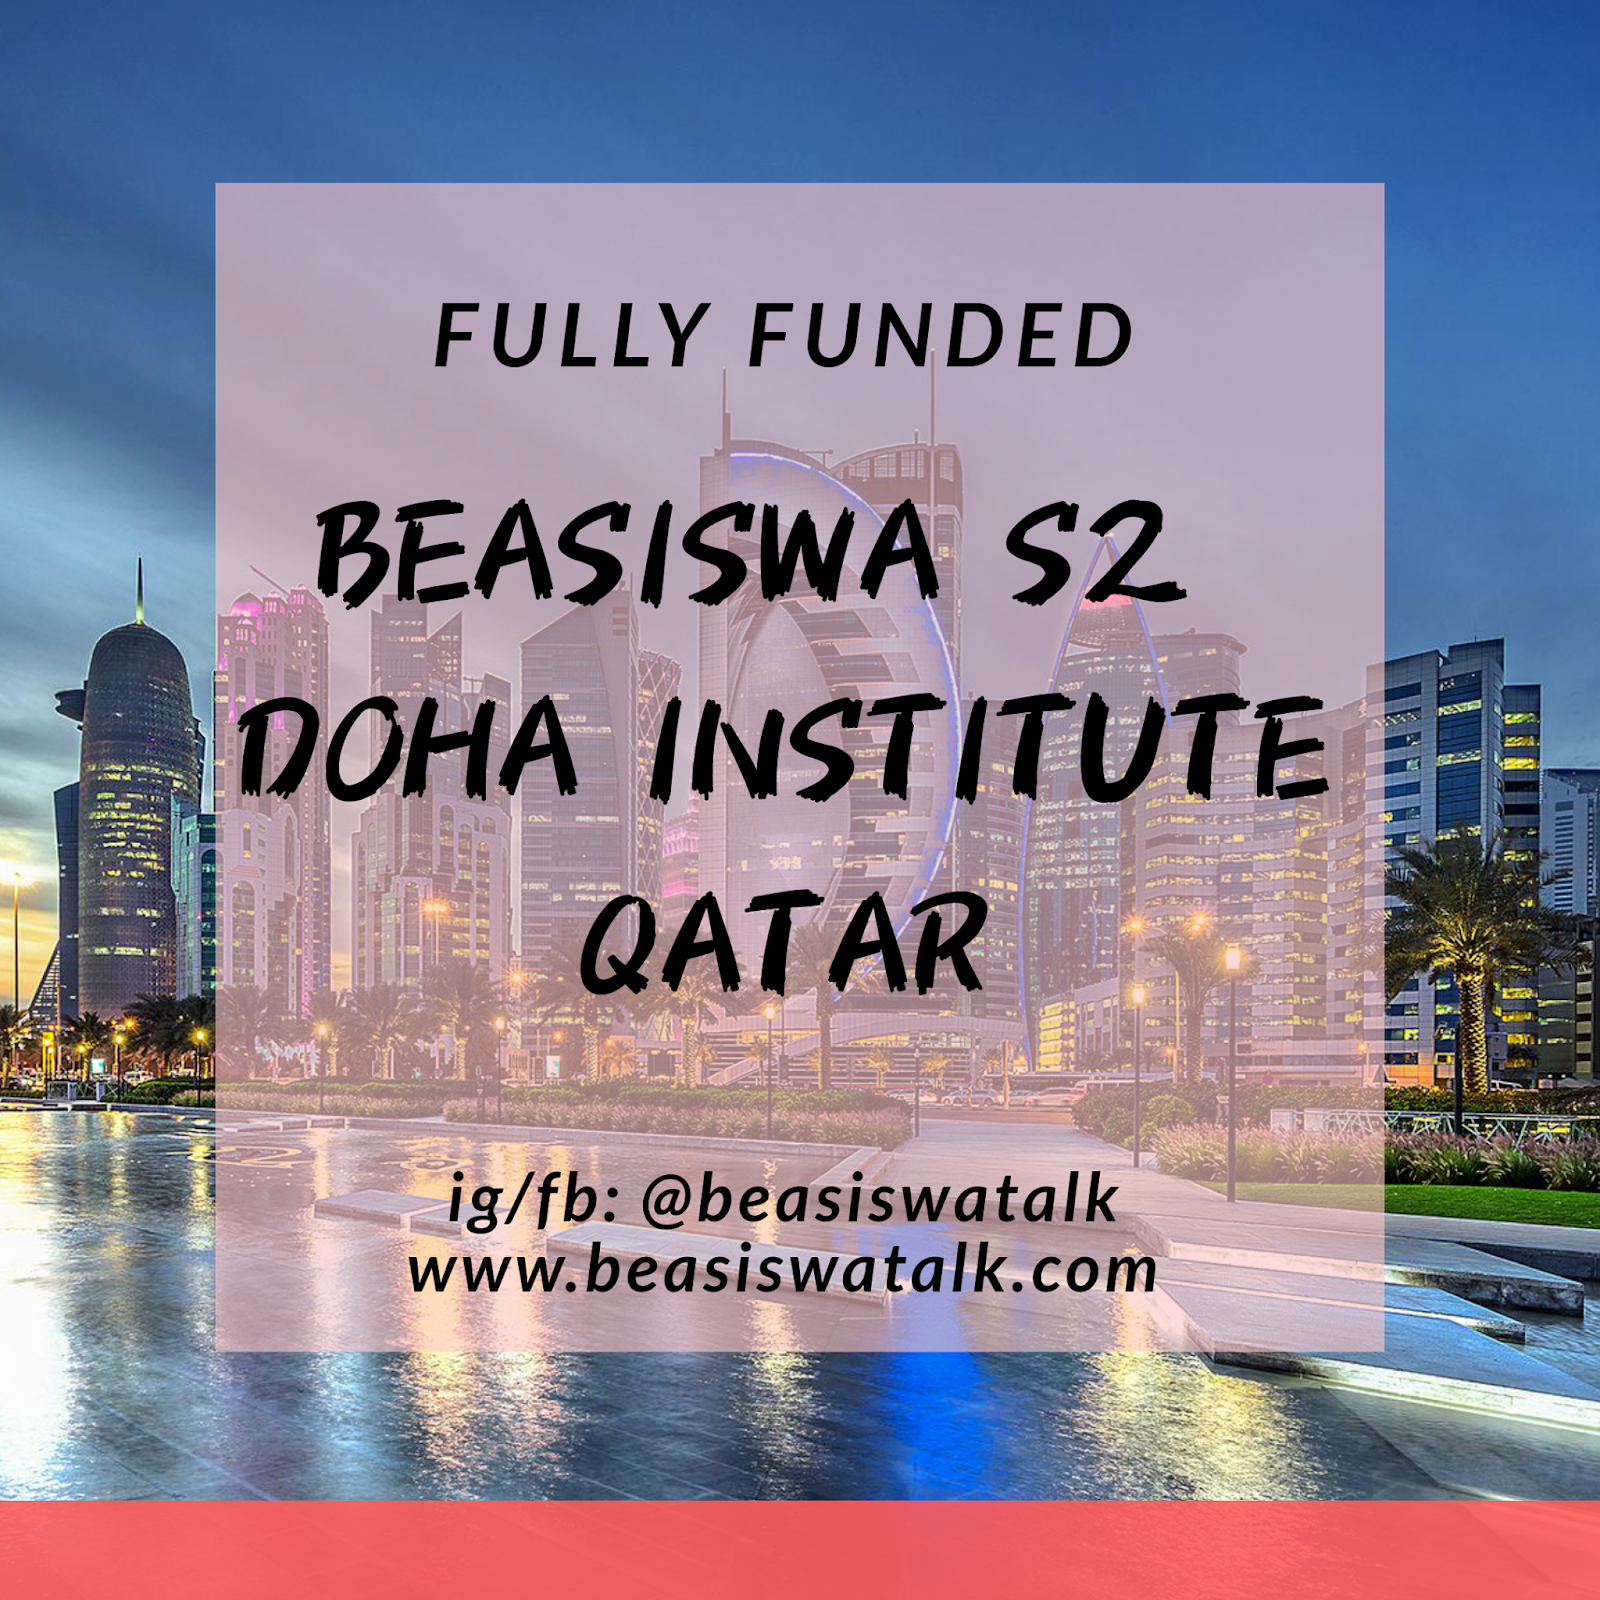 Fully Funded Beasiswa S2 Doha Institute Qatar 2020 - Beasiswatalk